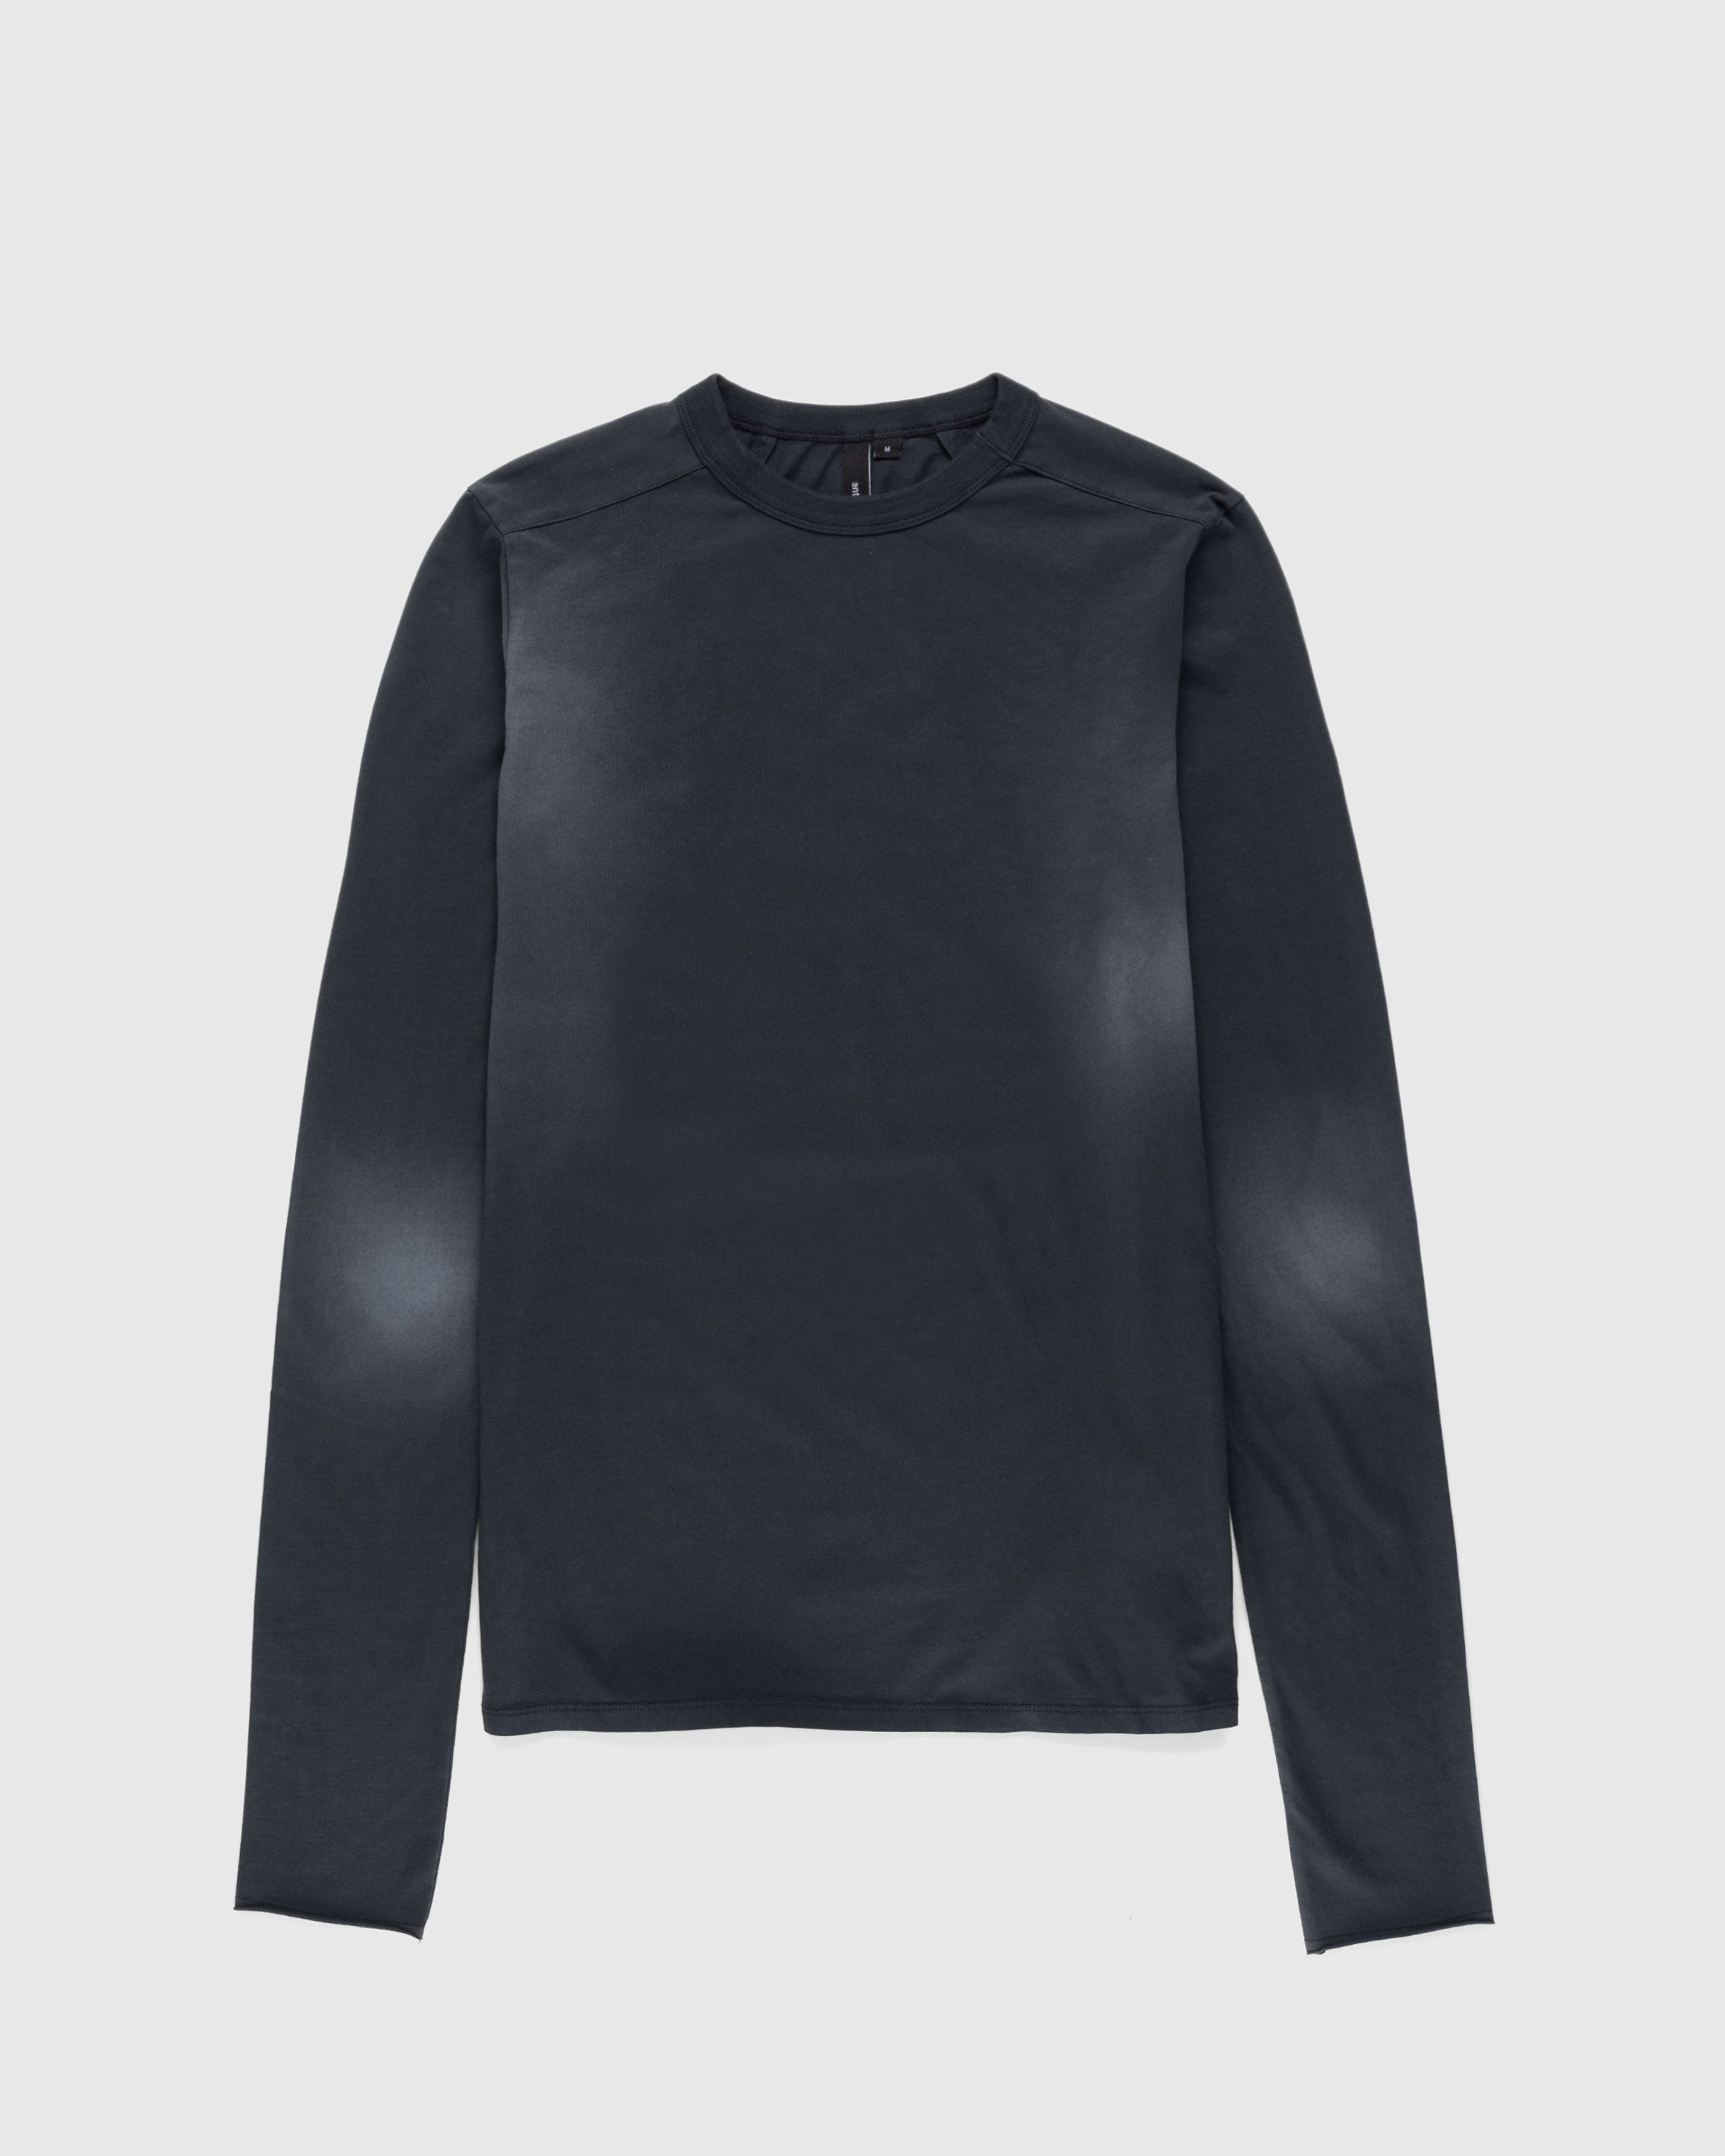 Entire Studios - Primer Longsleeve Washed Black - Clothing - Black - Image 1